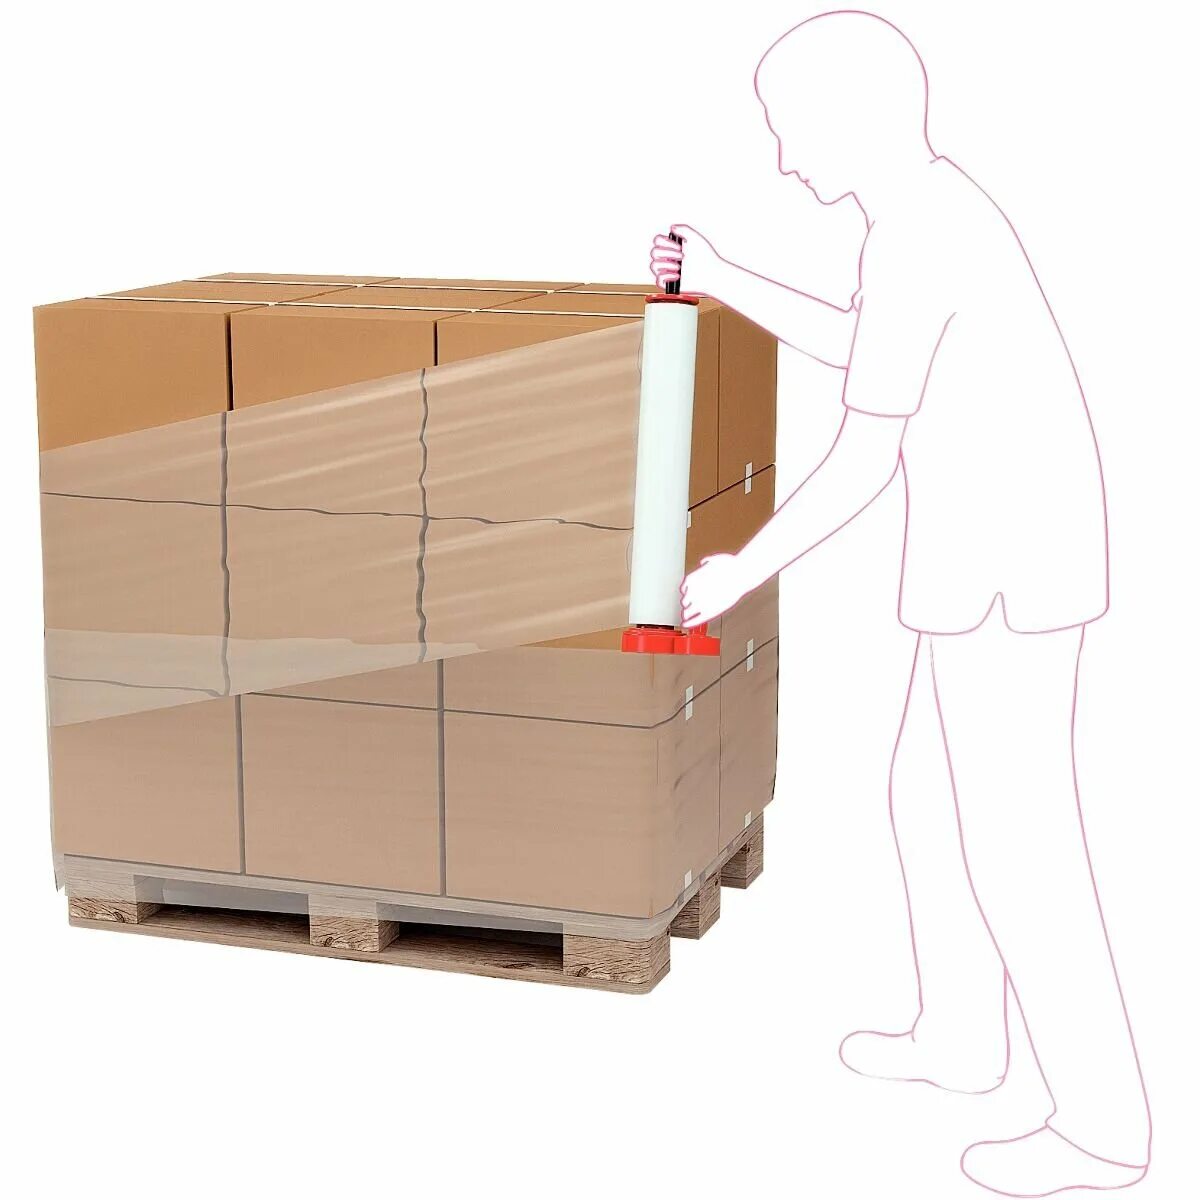 Правило паллета. Упаковка грузов для транспортировки. Упаковка паллет. Упаковка груза на паллетах. Упаковка палеты с коробками.